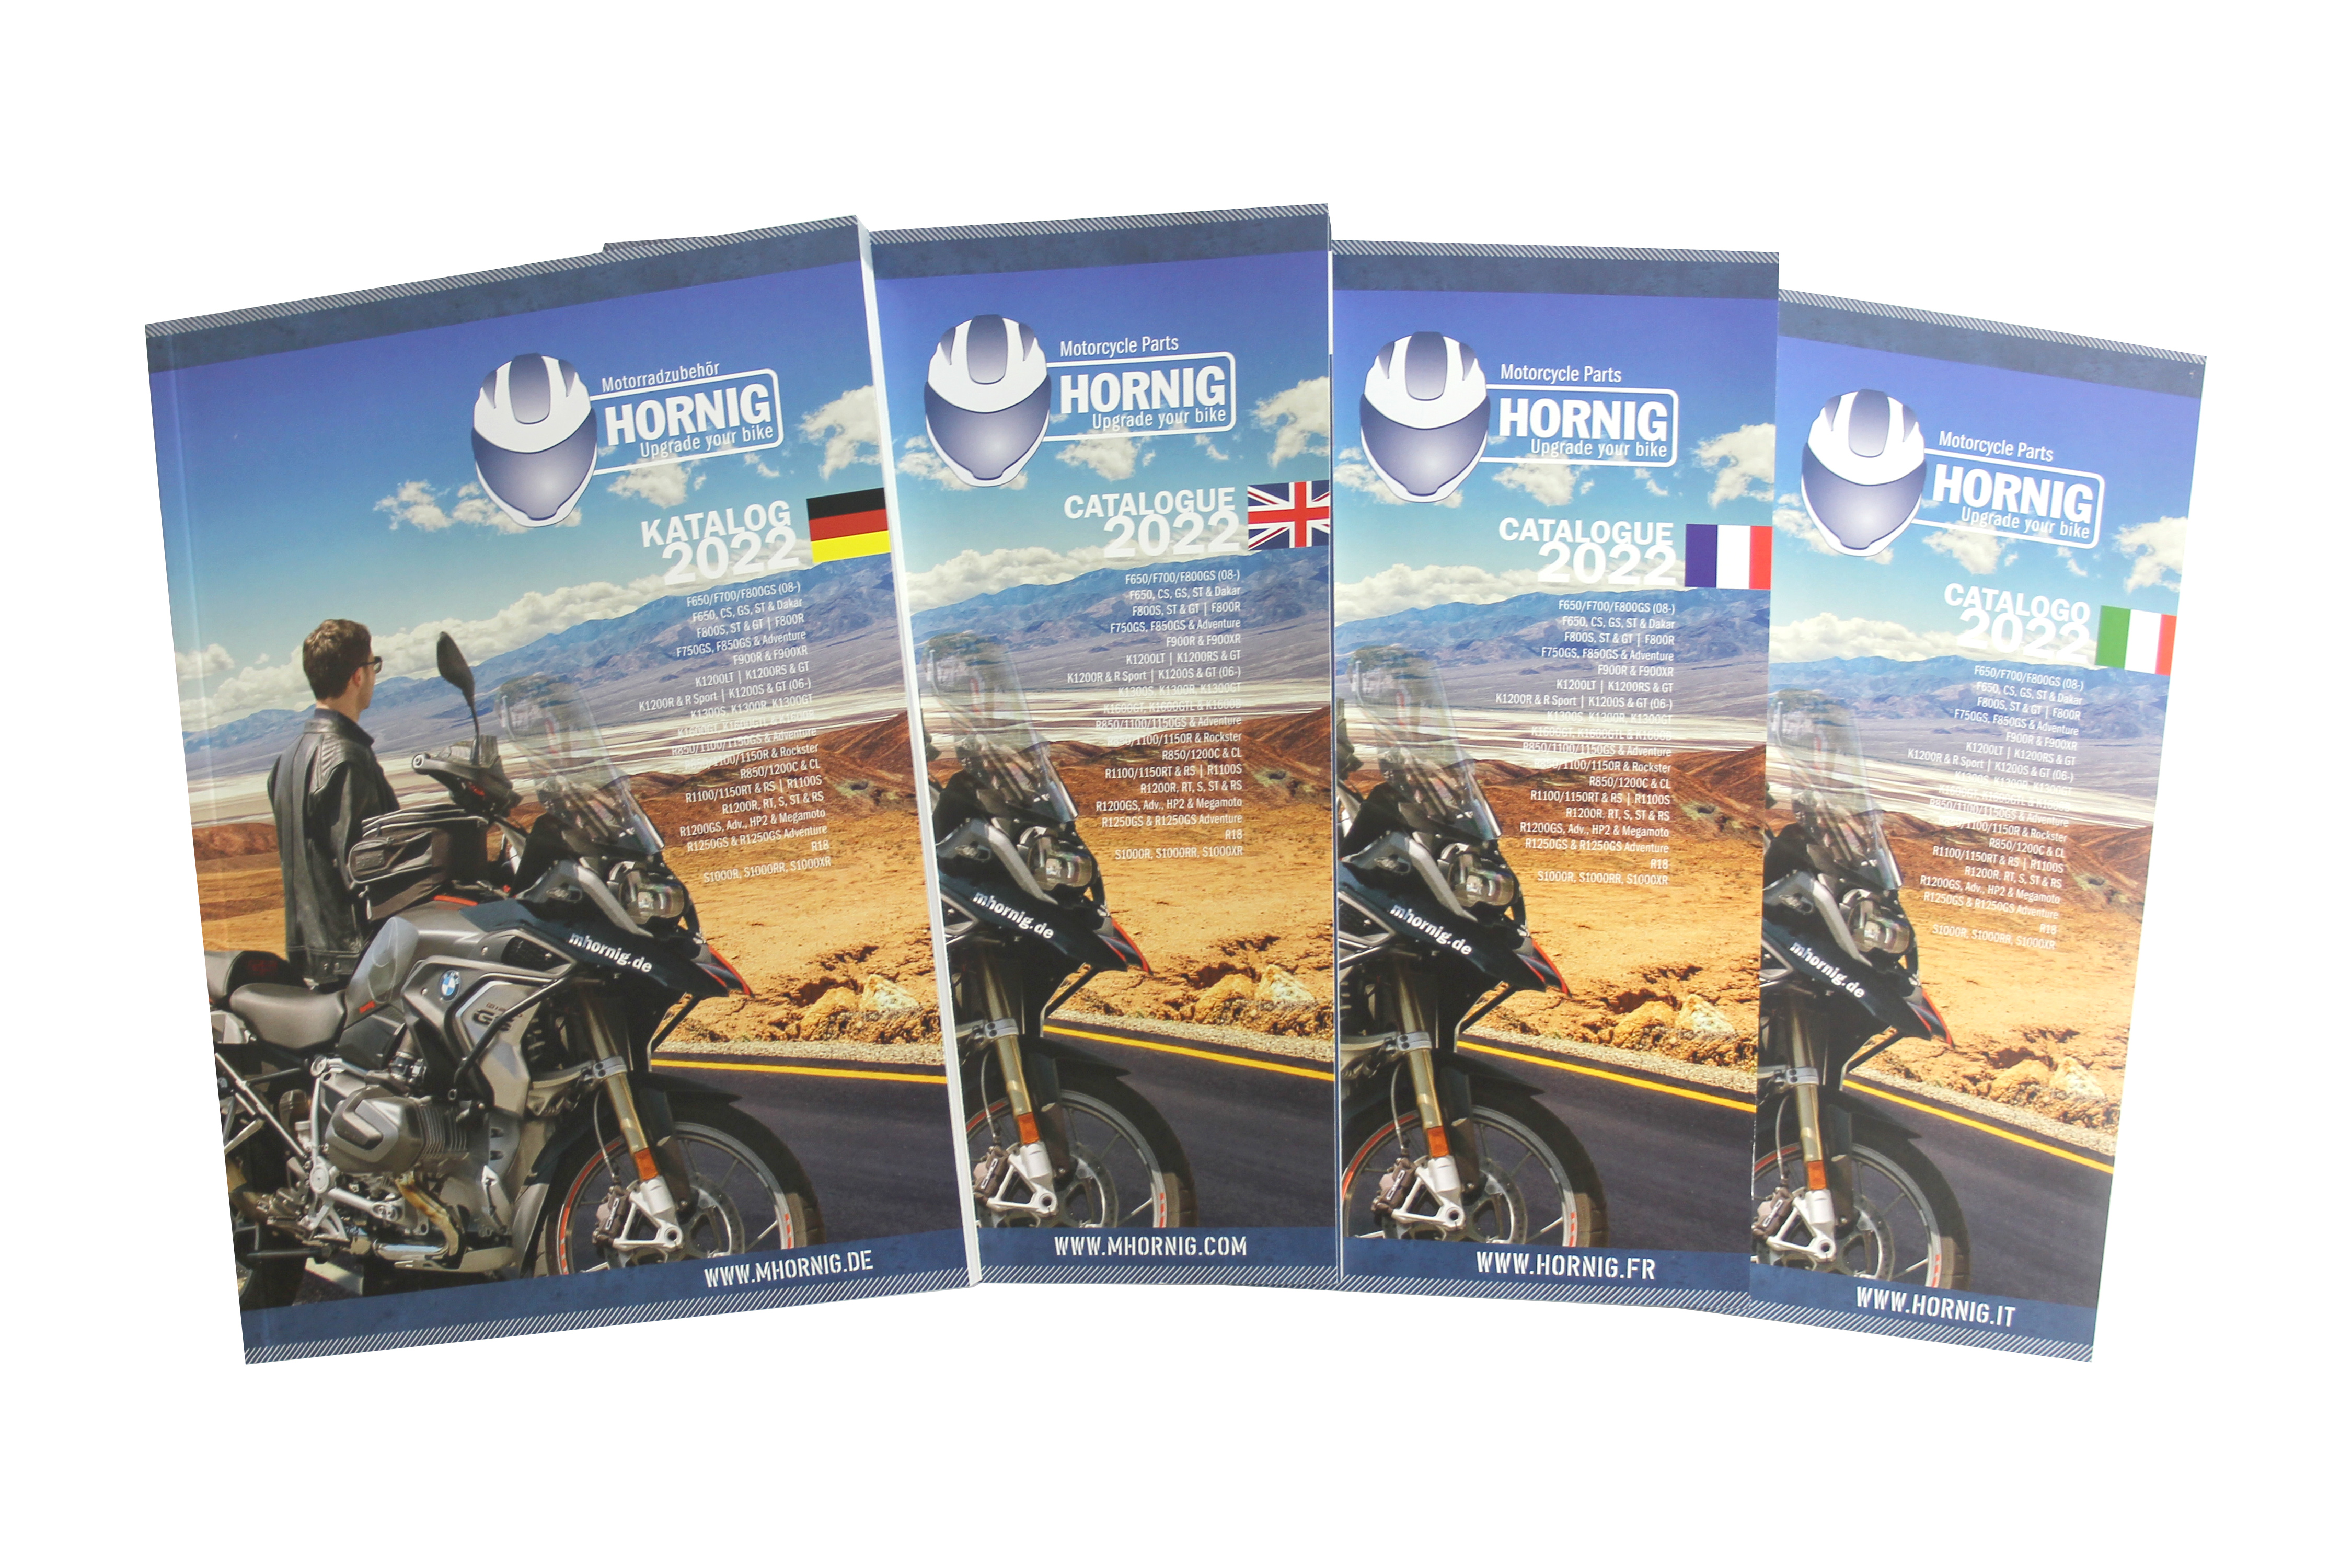 Neuer Katalog 2022 für BMW Motorradzubehör von Hornig jetzt im Versand!, Motorradzubehör Hornig